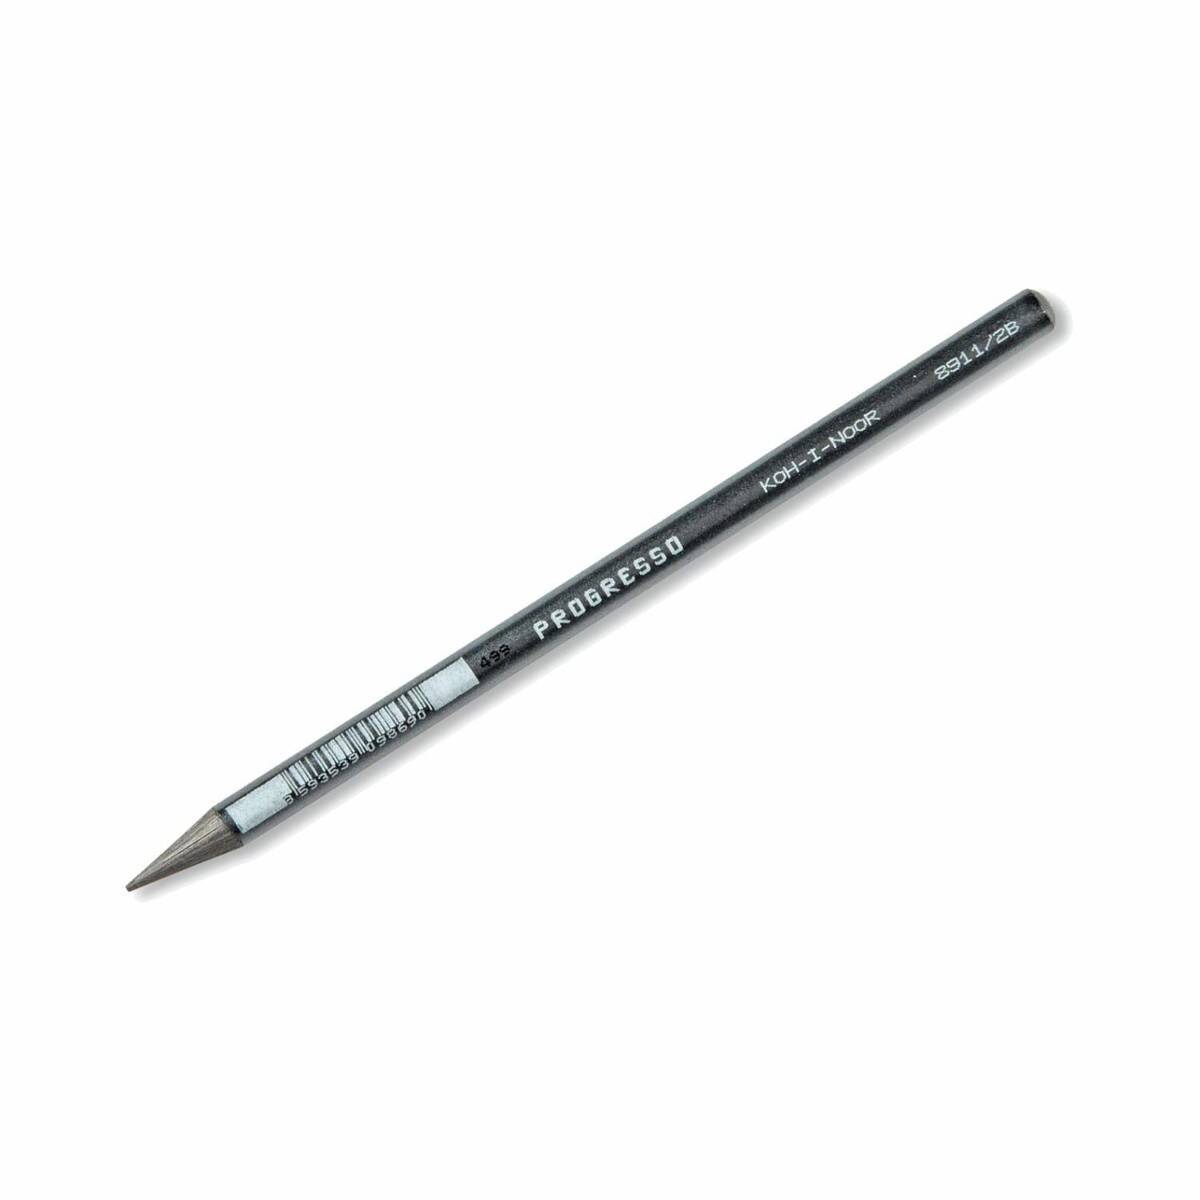 Ołówek Bezdrzewny 2B PROGRESSO 8911/2B.